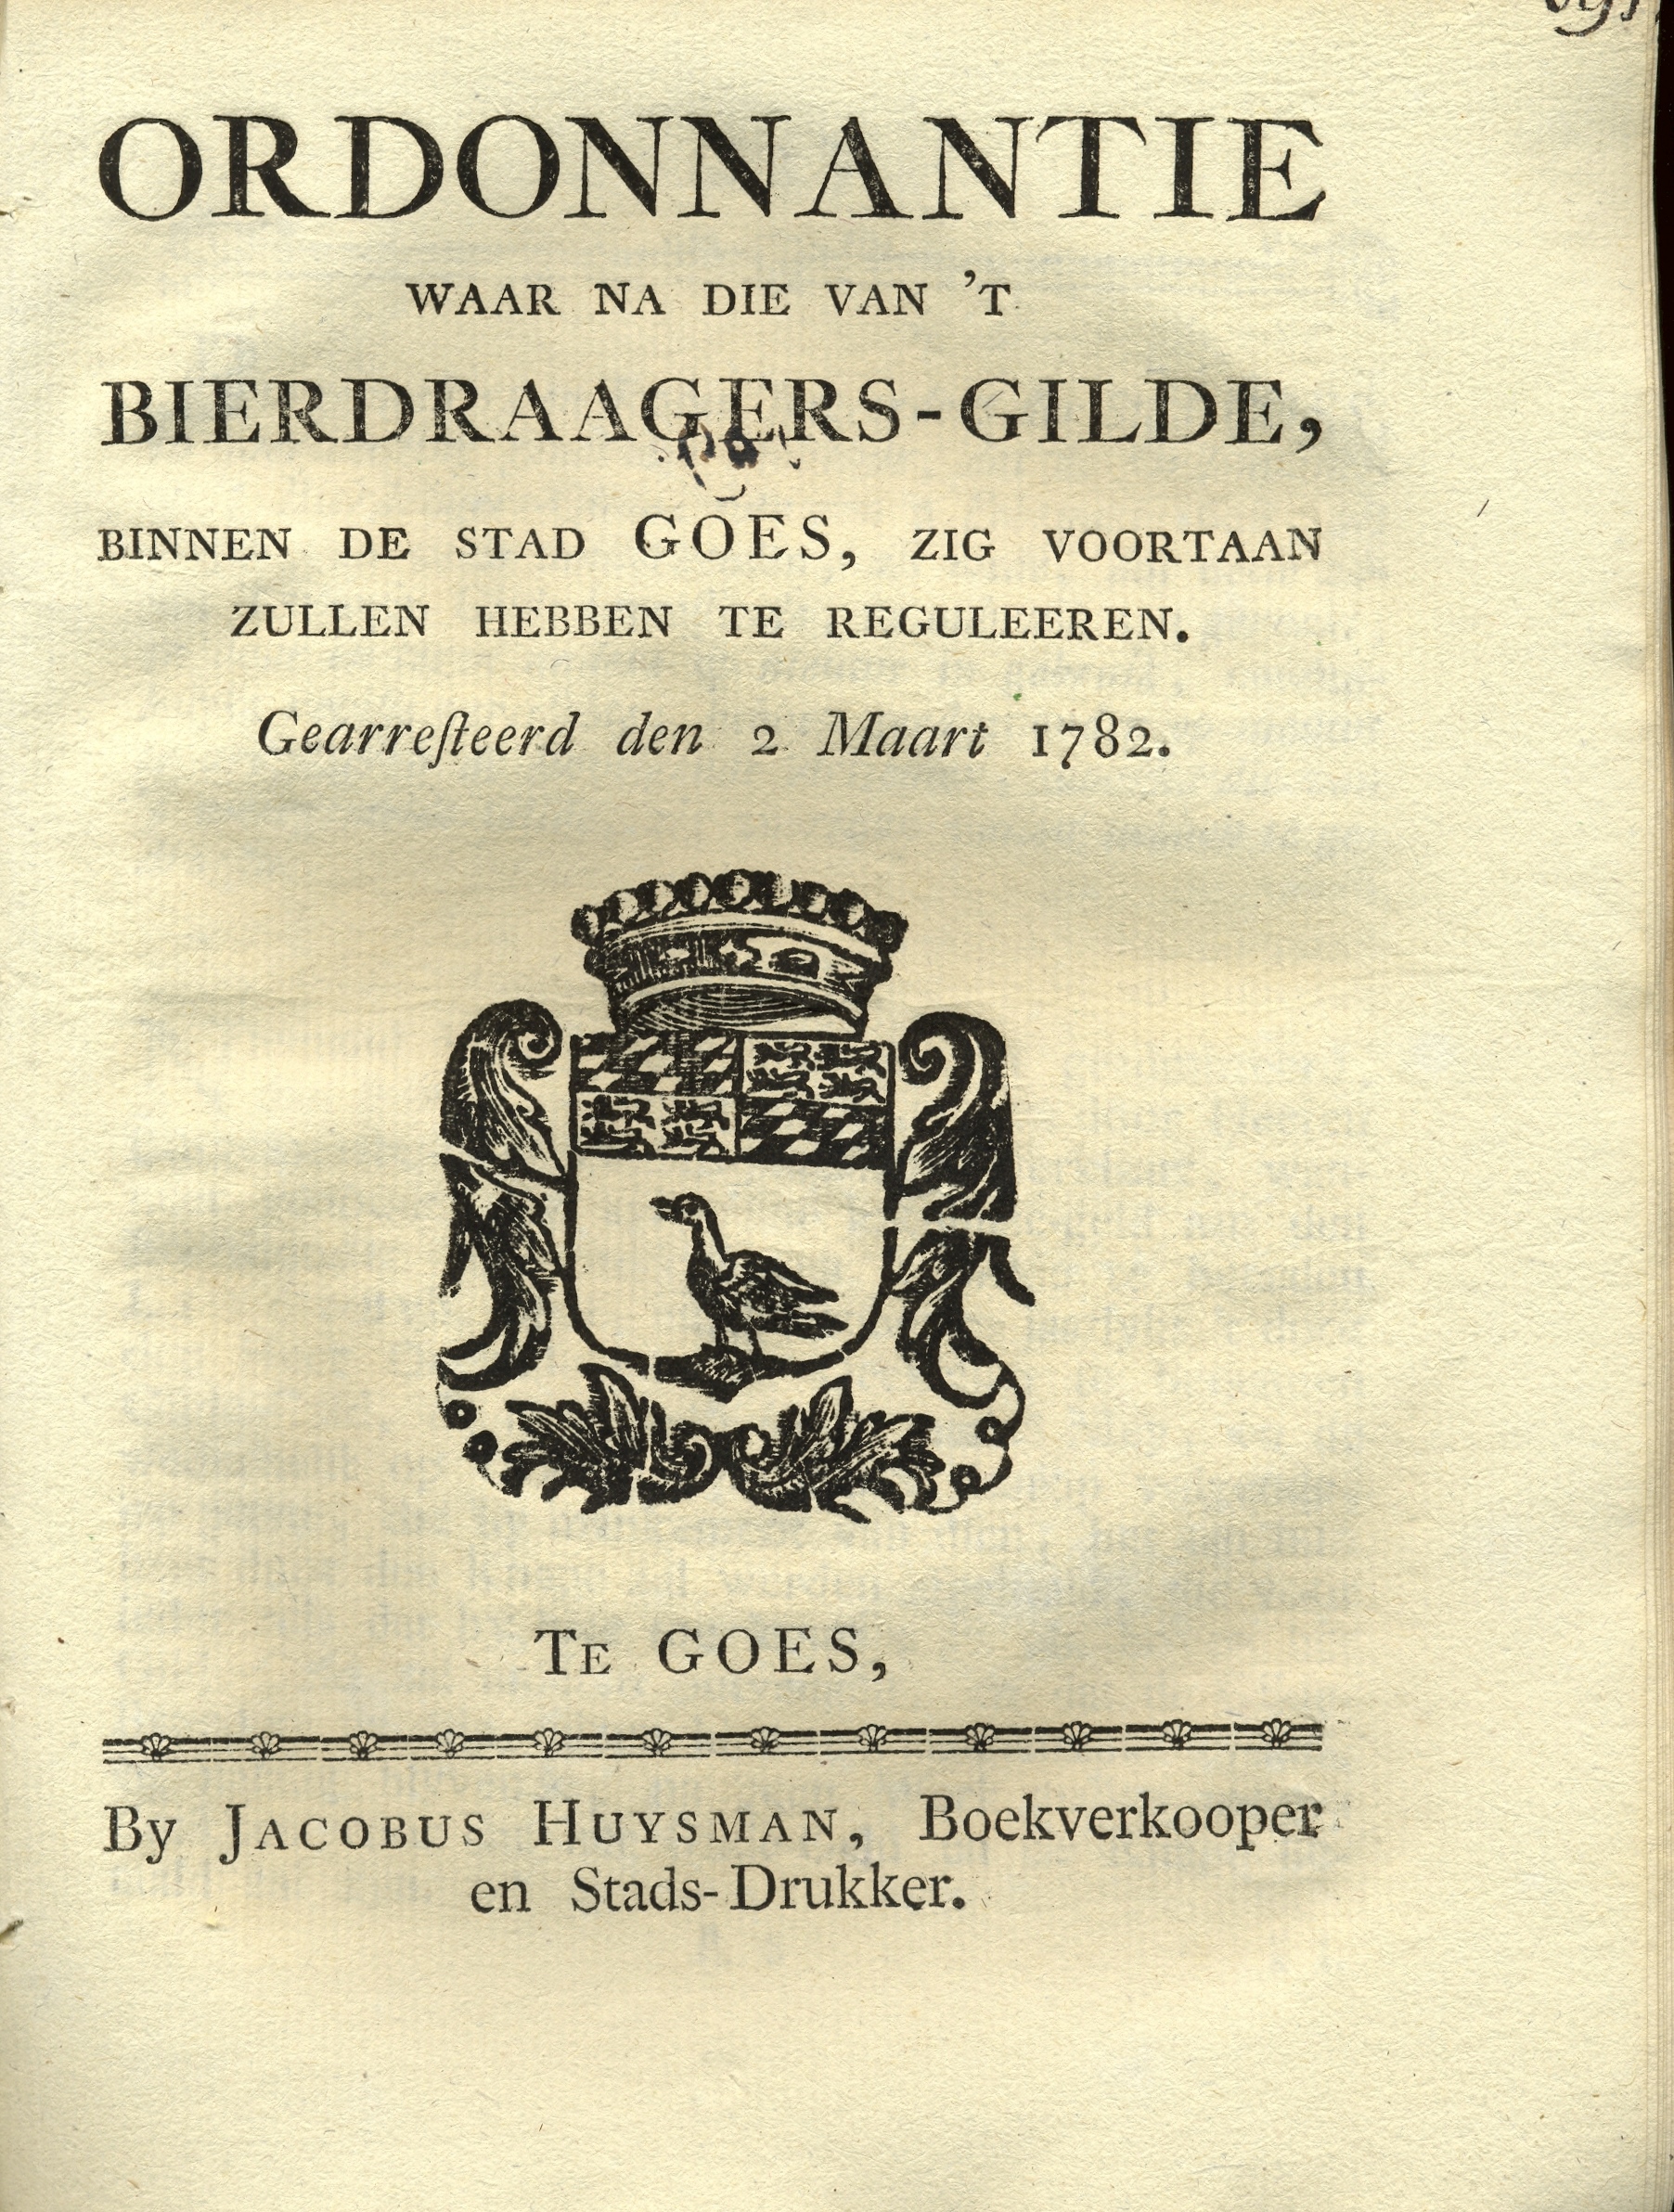 Ordonnantie voor de bierdragers, 1782.